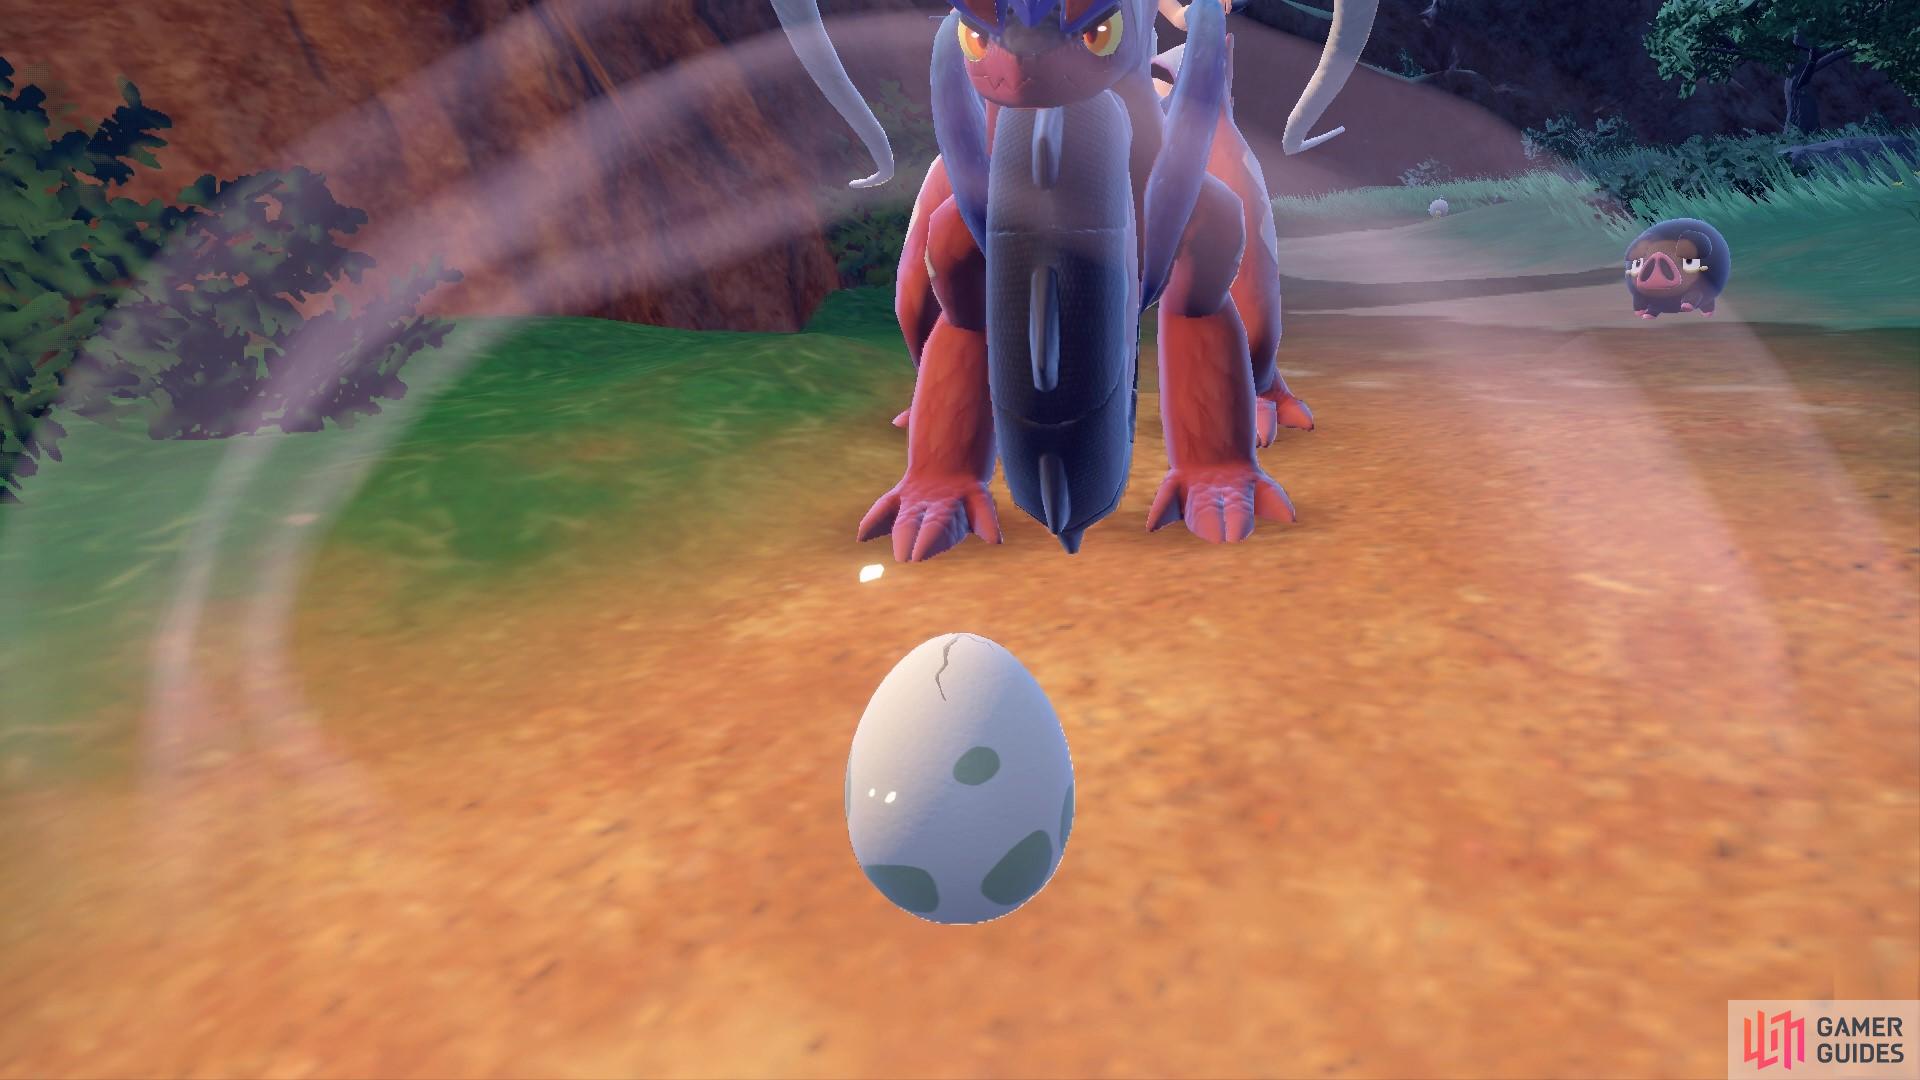 Walk around until your egg starts to hatch!